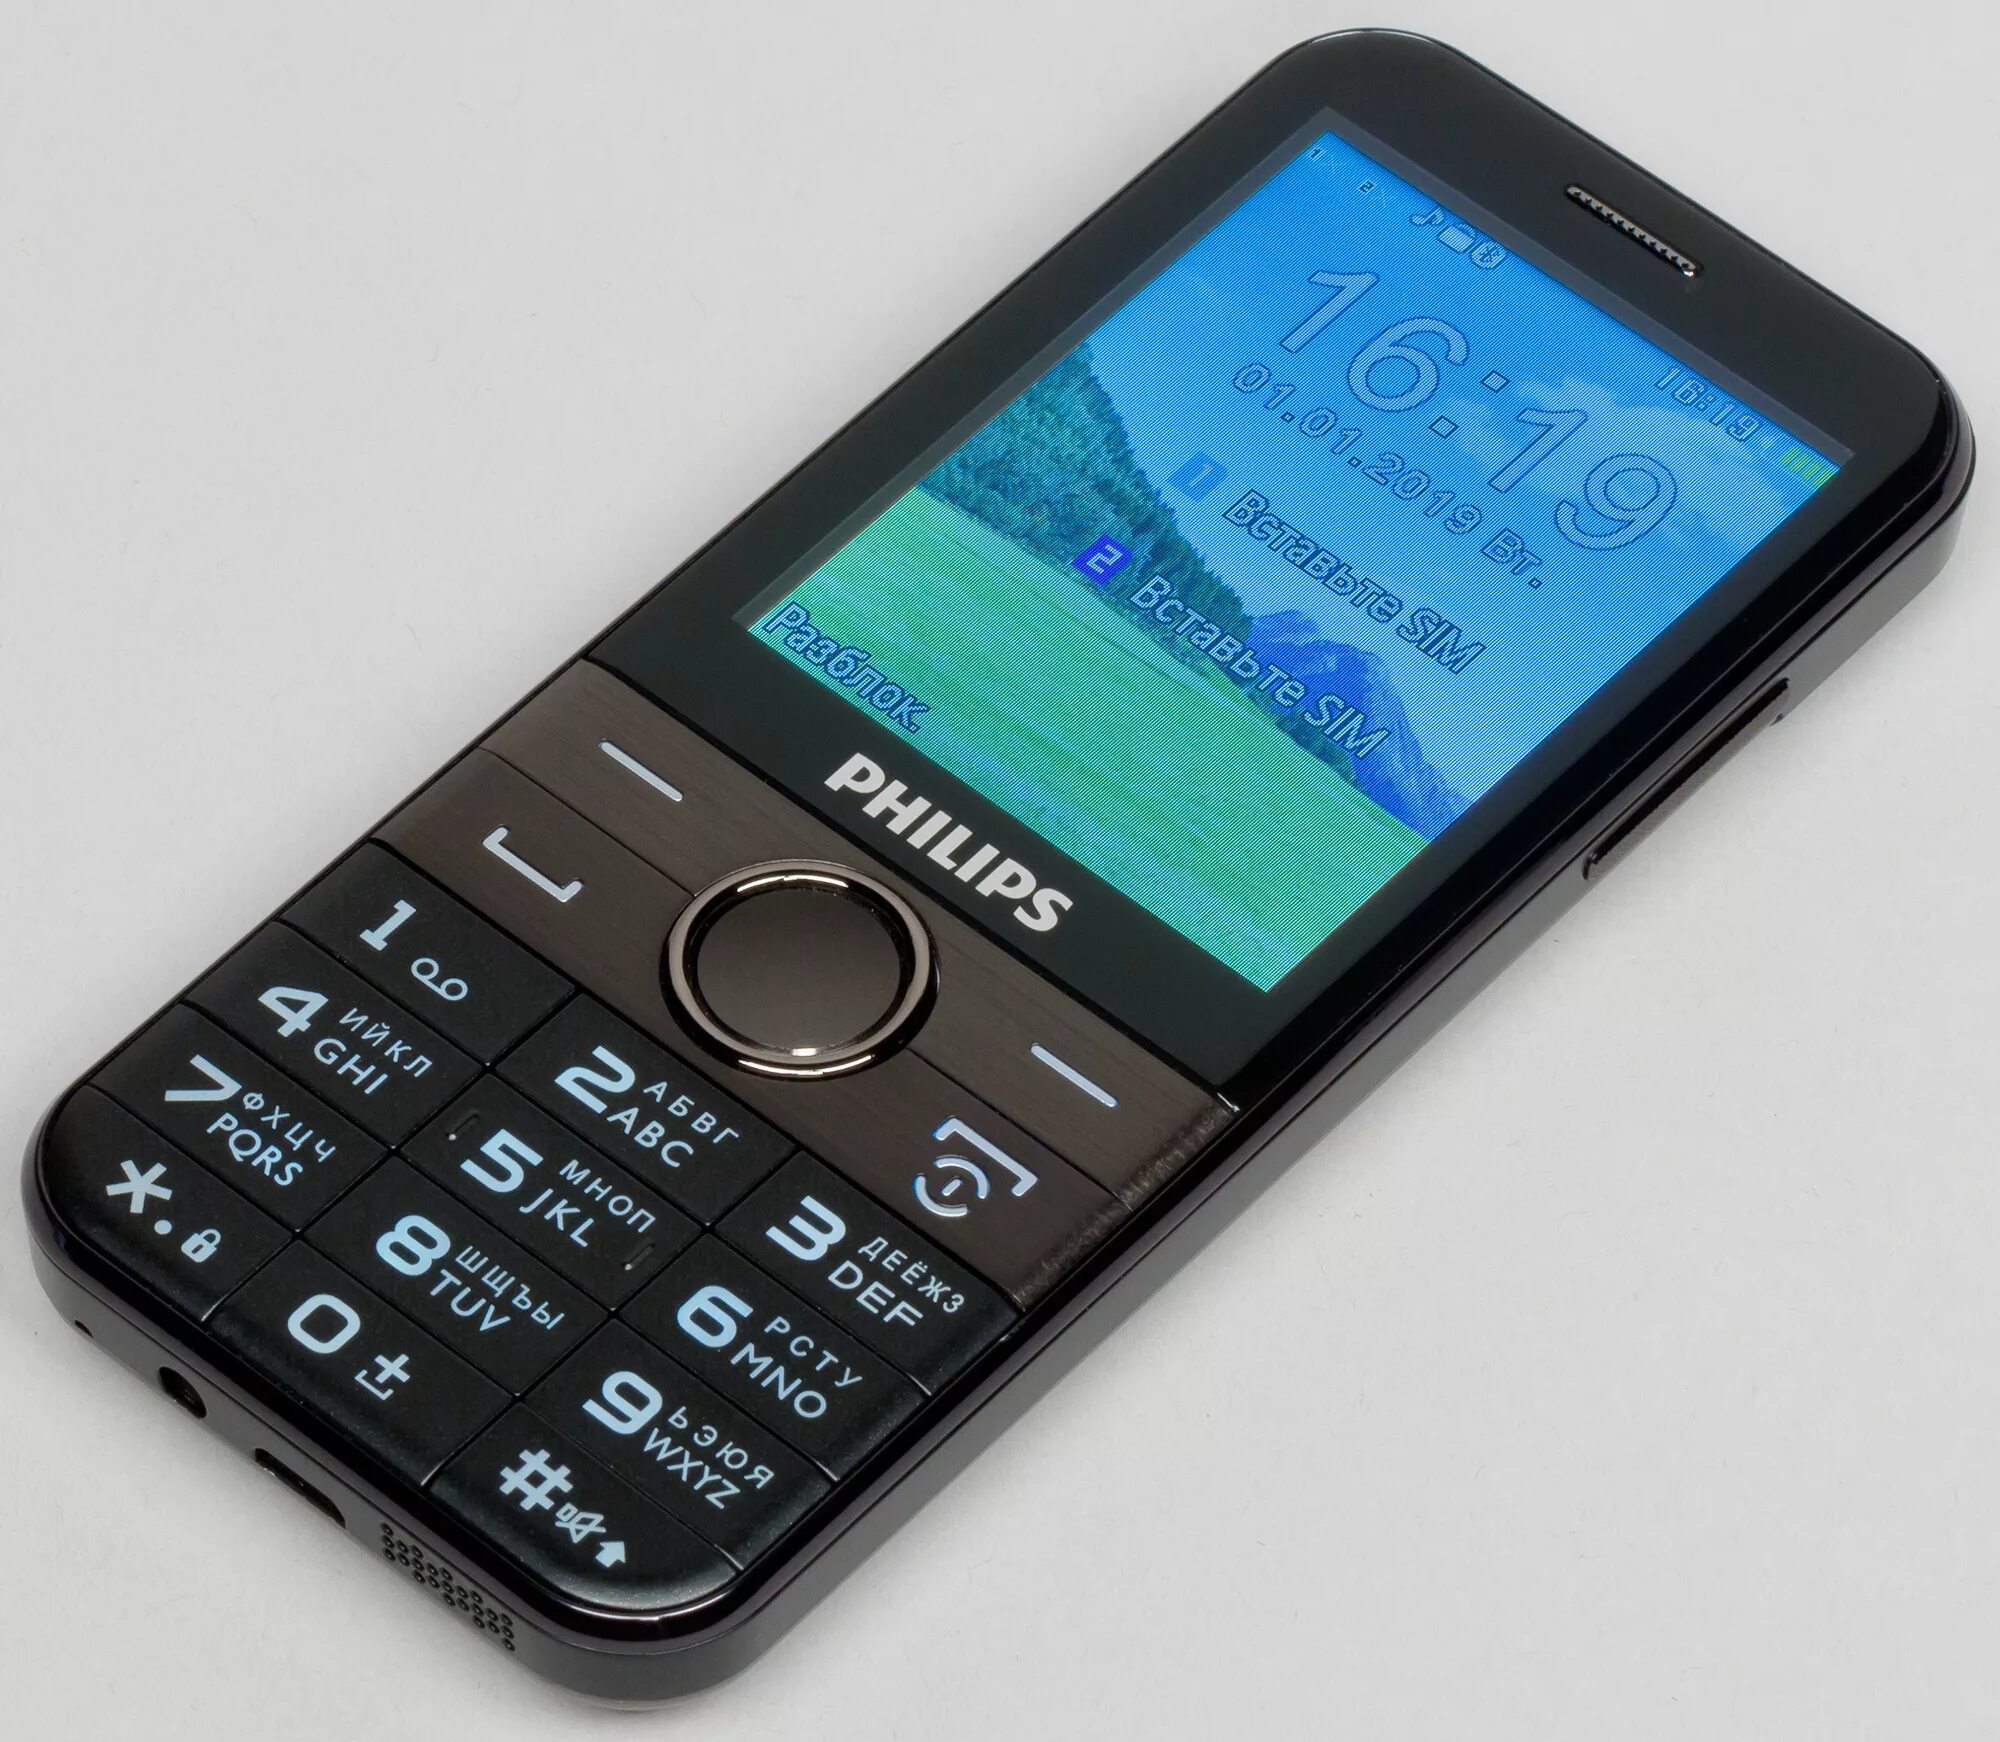 Филипс 580. Philips Xenium e580. Телефон Philips Xenium e580. Телефон сотовый Philips Xenium e580. Philips Xenium e590.